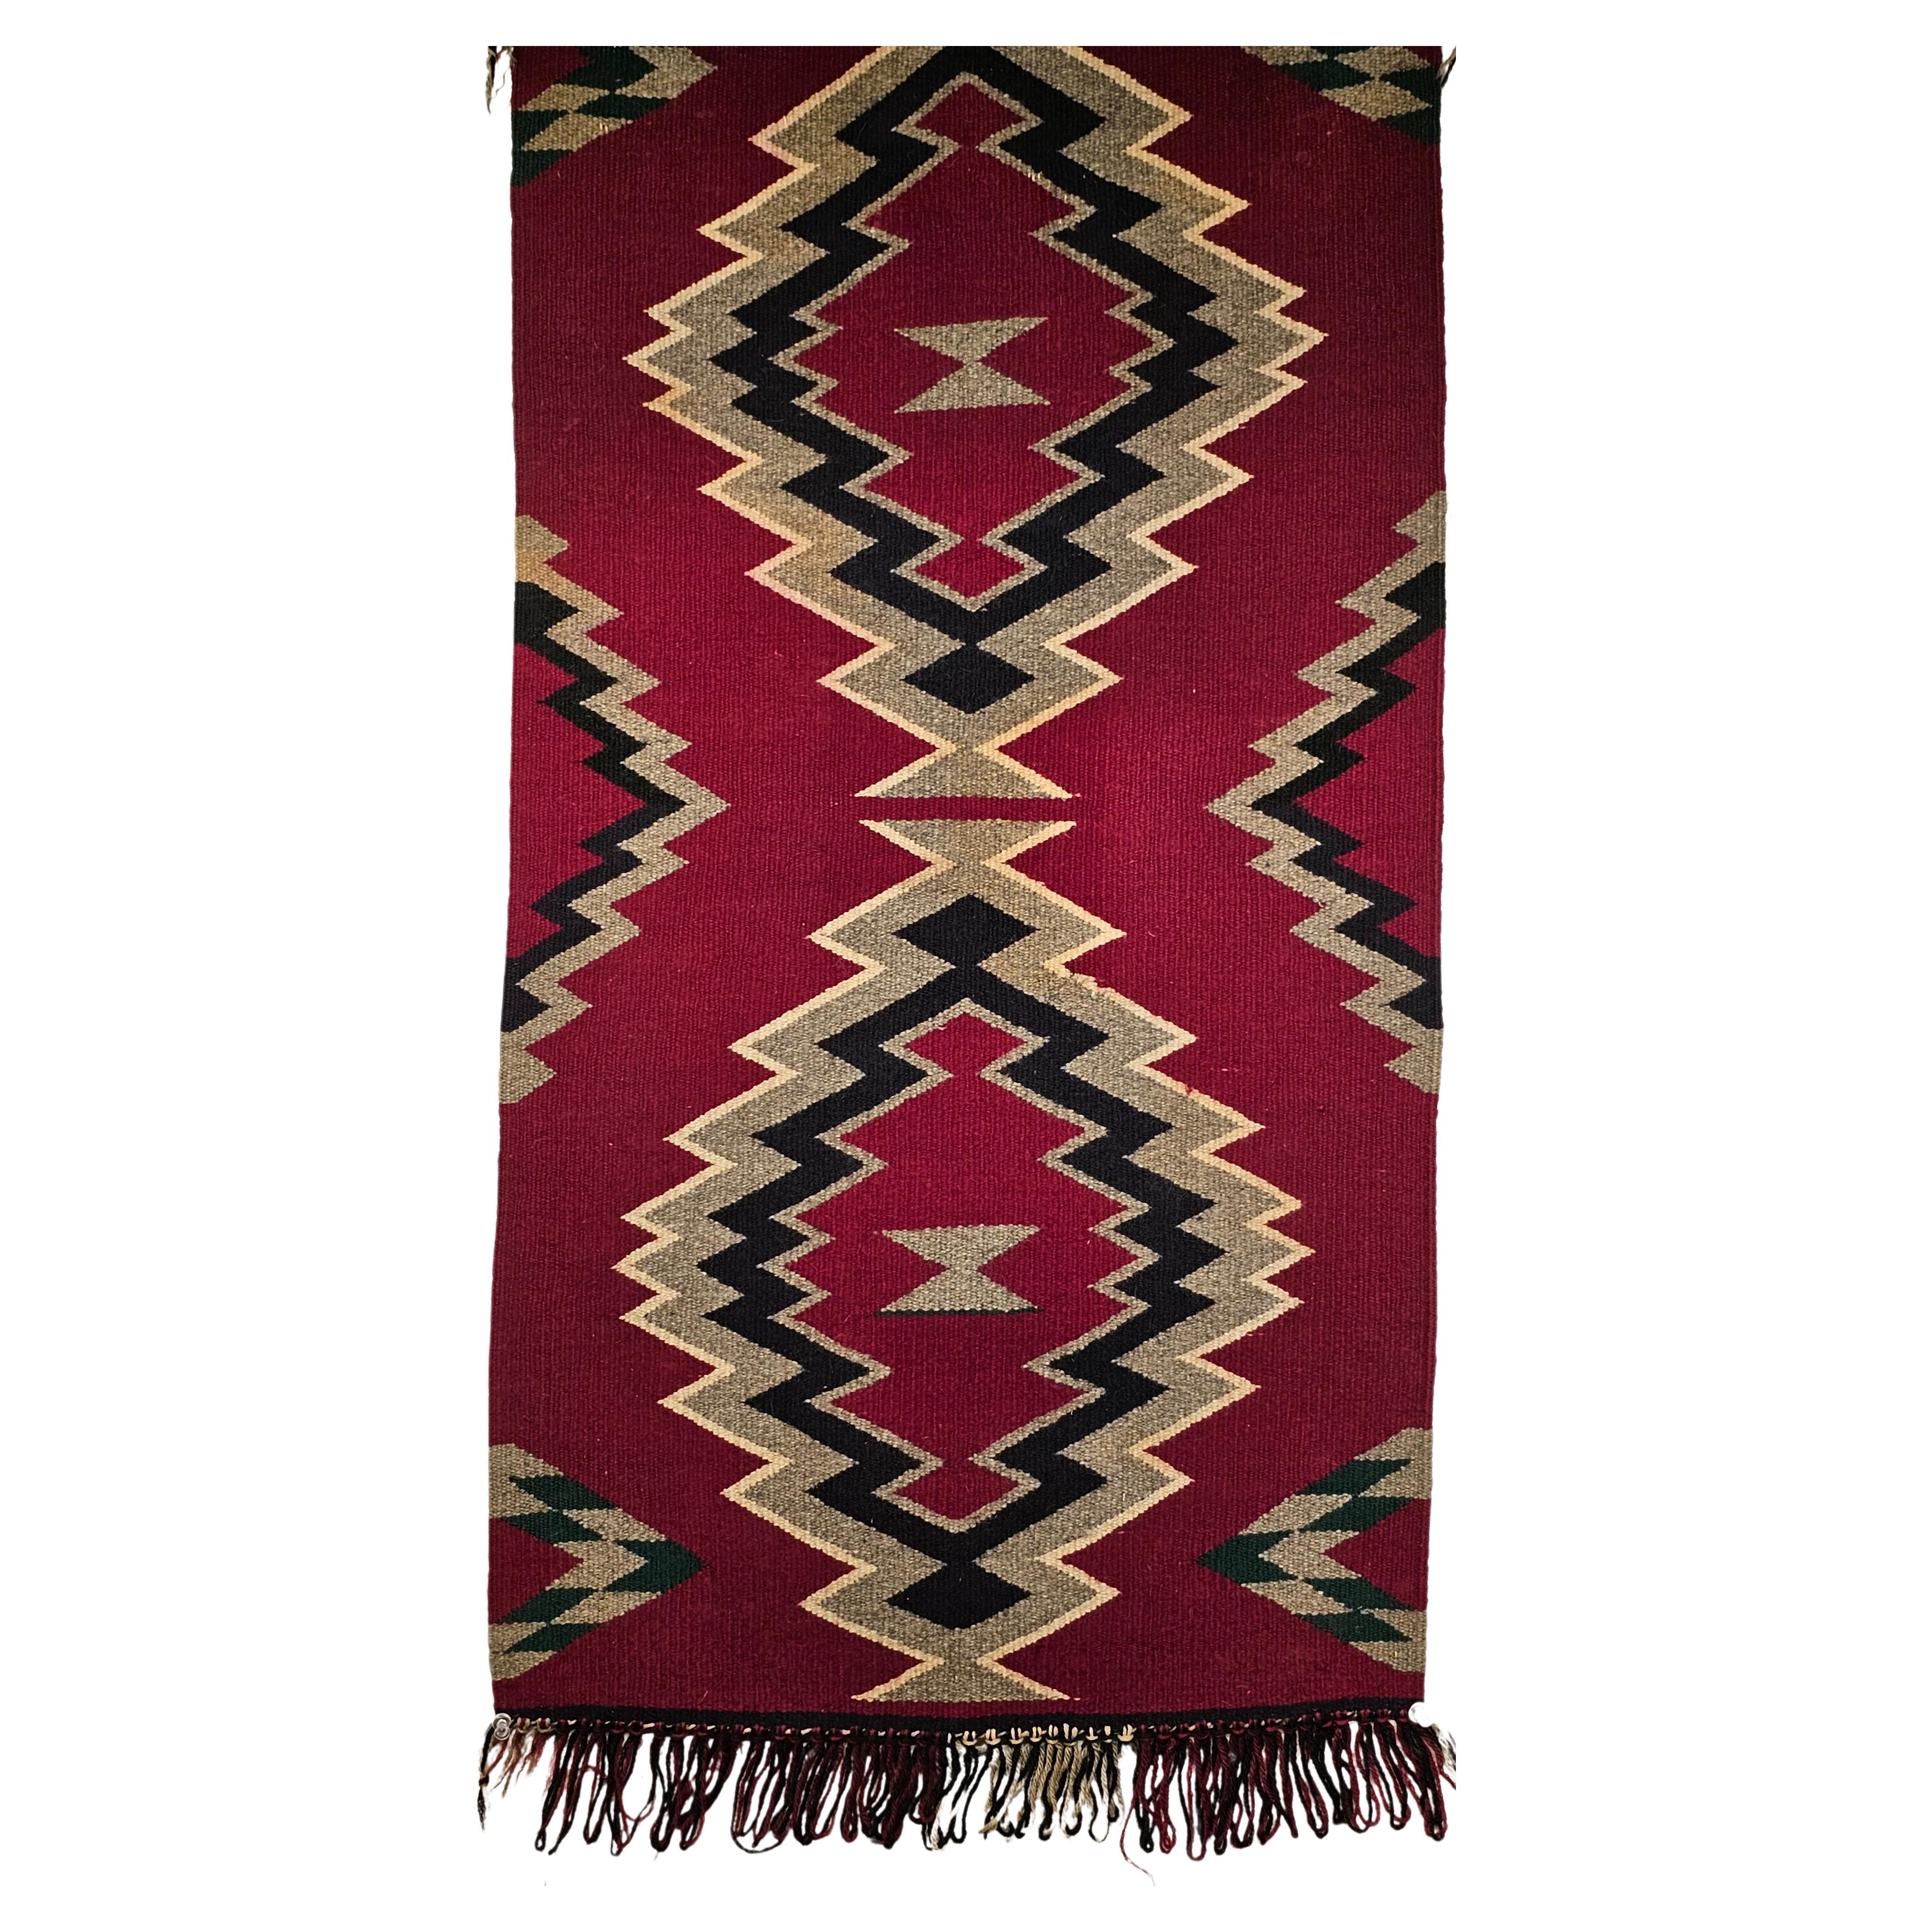 Amerikanischer Navajo-Teppich im Vintage-Stil mit Sturm-Muster in Maroon, Schwarz, Grau, Elfenbein, Elfenbein